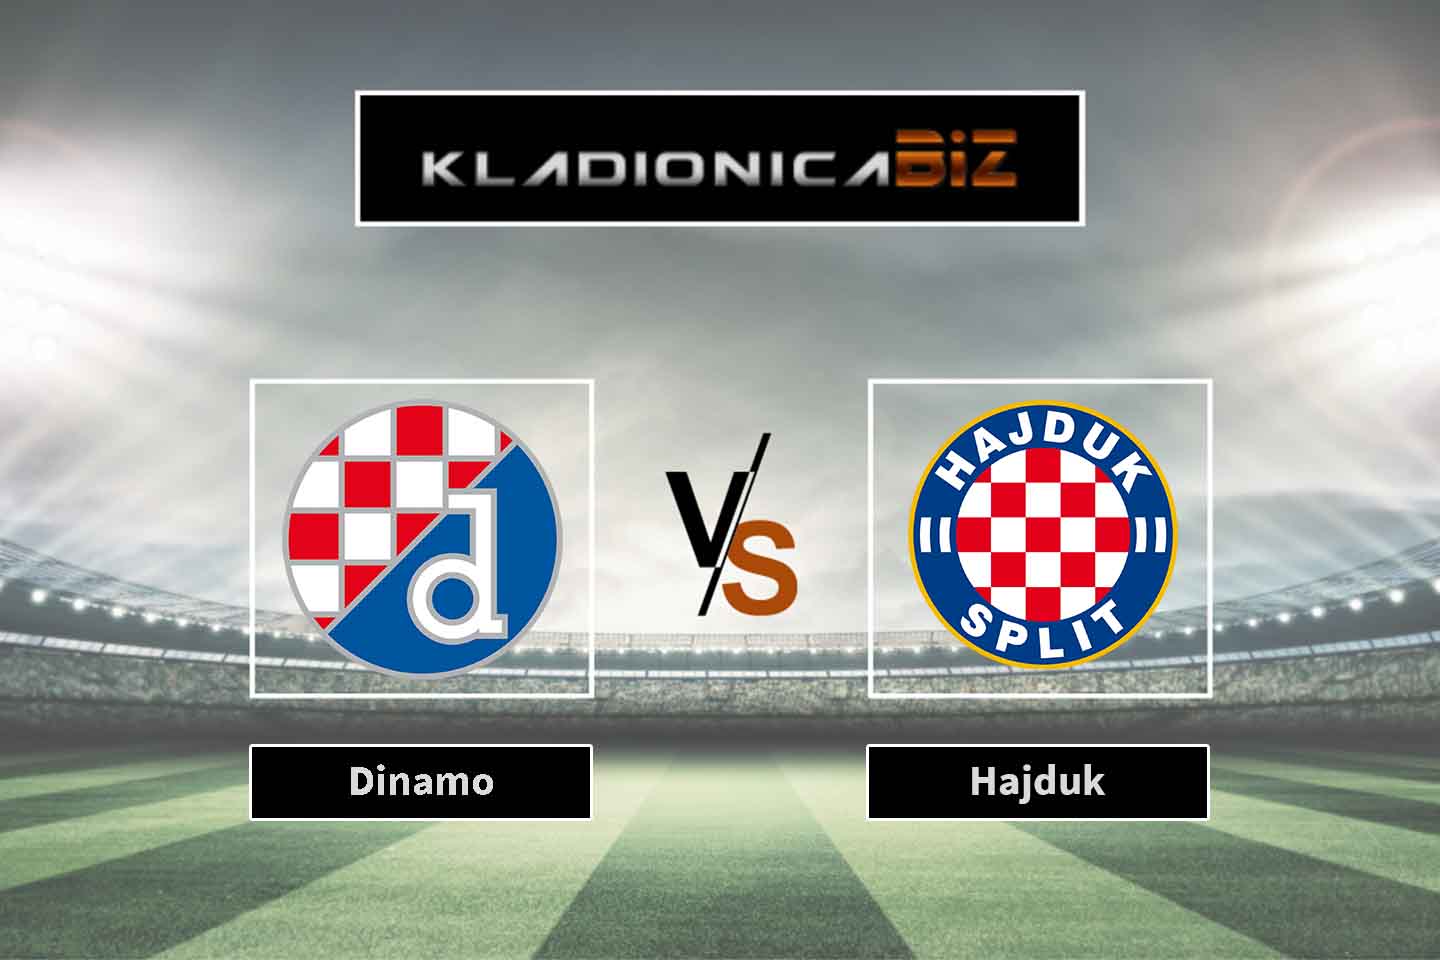 Hajduk Split vs Dinamo Zagreb, 1-0